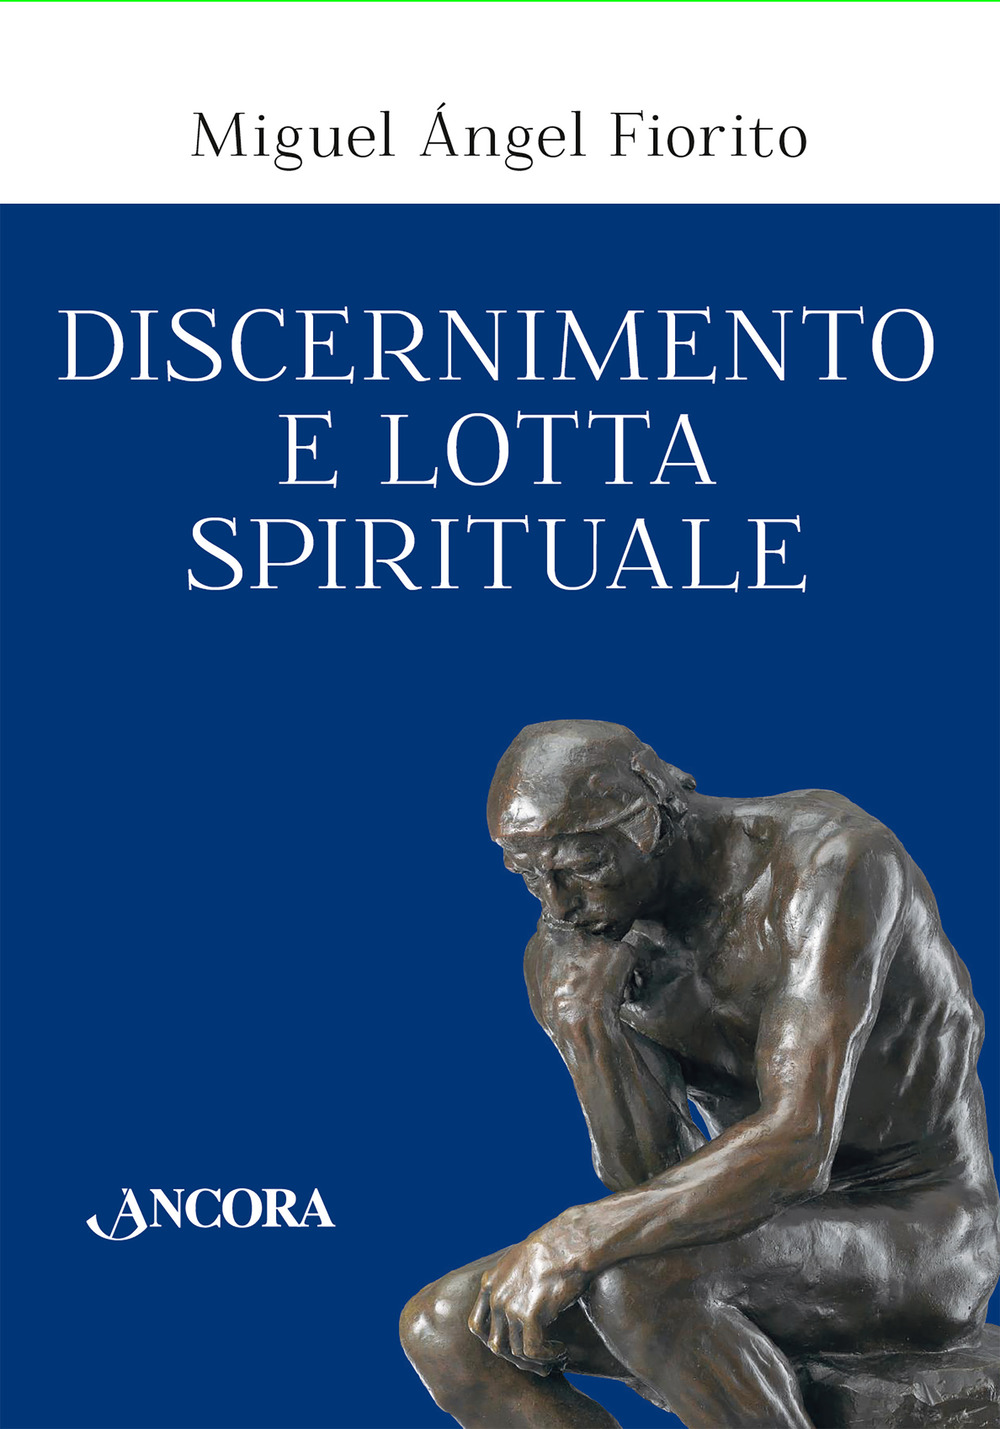 Discernimento e lotta spirituale. Commento delle Regole per il discernimento della Prima settimana degli Esercizi spirituali di sant'Ignazio di Loyola